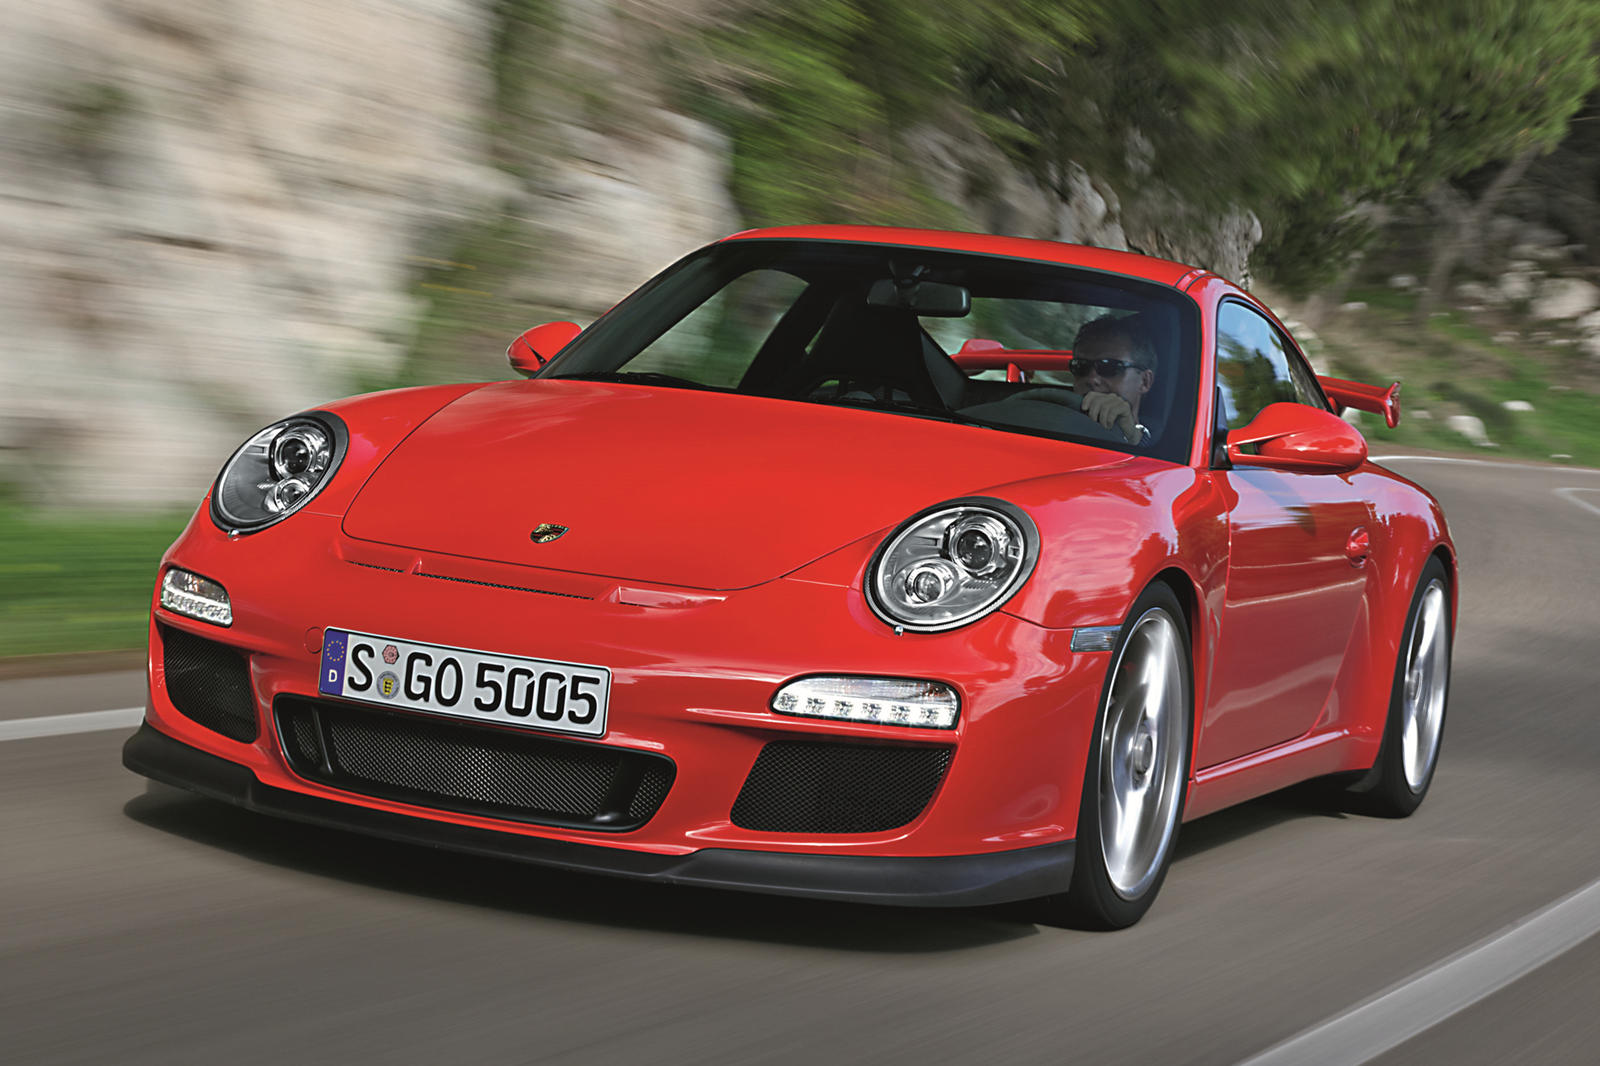 Плохая новость заключается в том, что двигатели, разработанные в период с 2008 по 2013 год, устанавливают на Porsche 911 и Panamera того времени. Поскольку Porsche продолжает проводить собственное внутреннее расследование, которое включает изучение с